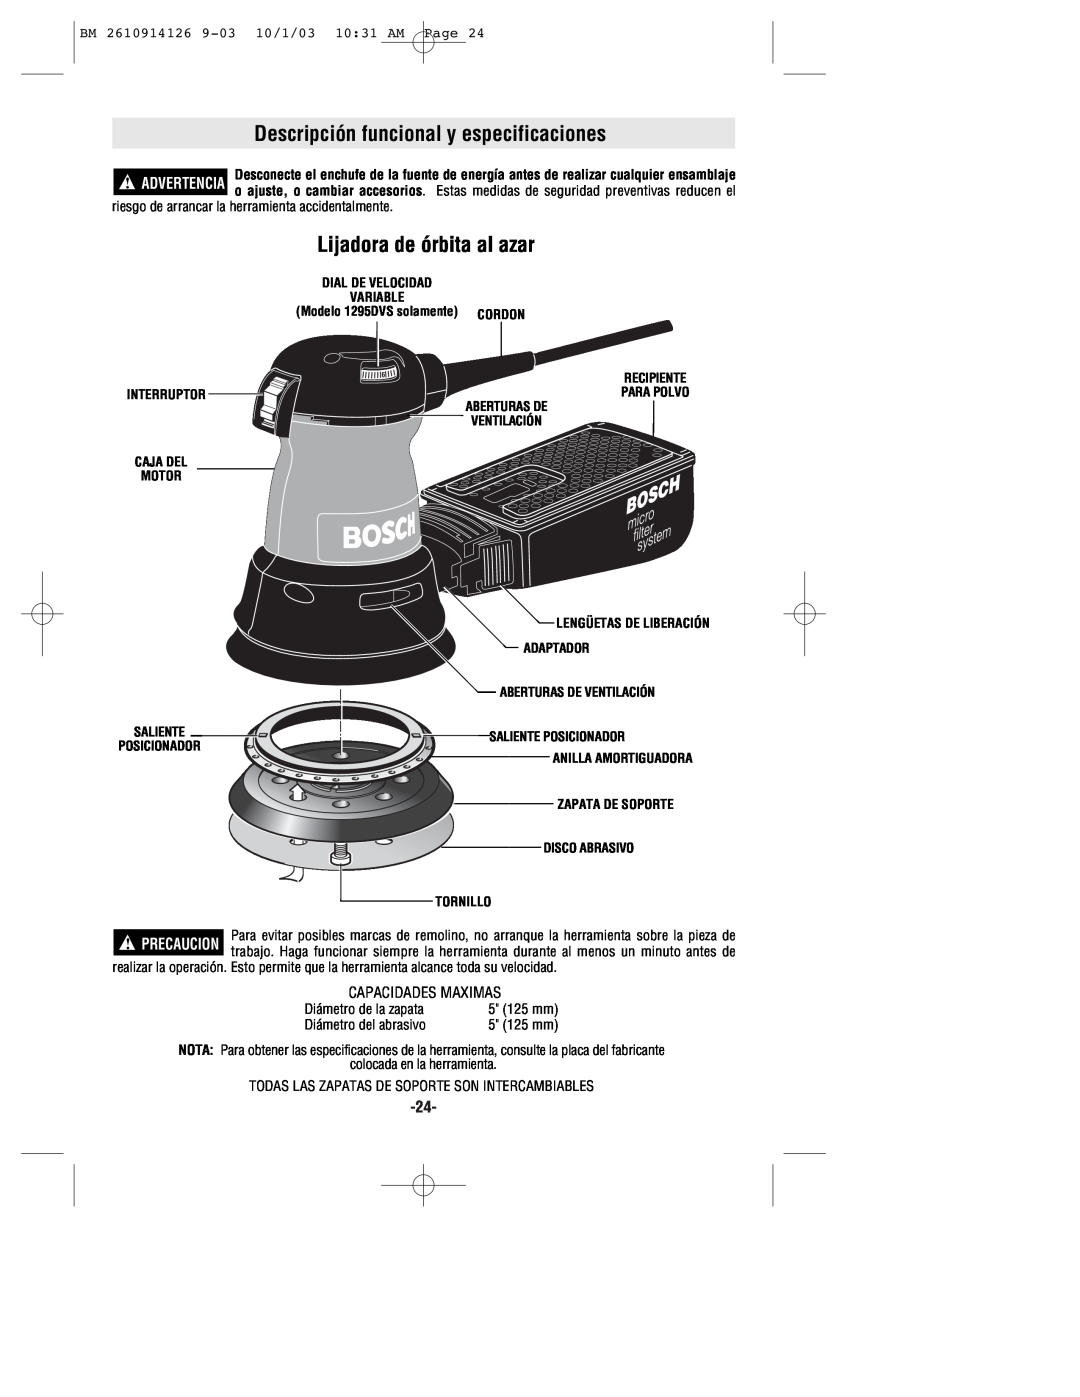 Bosch Power Tools 1295DH, 1295DP, 1295DVS manual Descripción funcional y especificaciones, Lijadora de órbita al azar, Cordon 